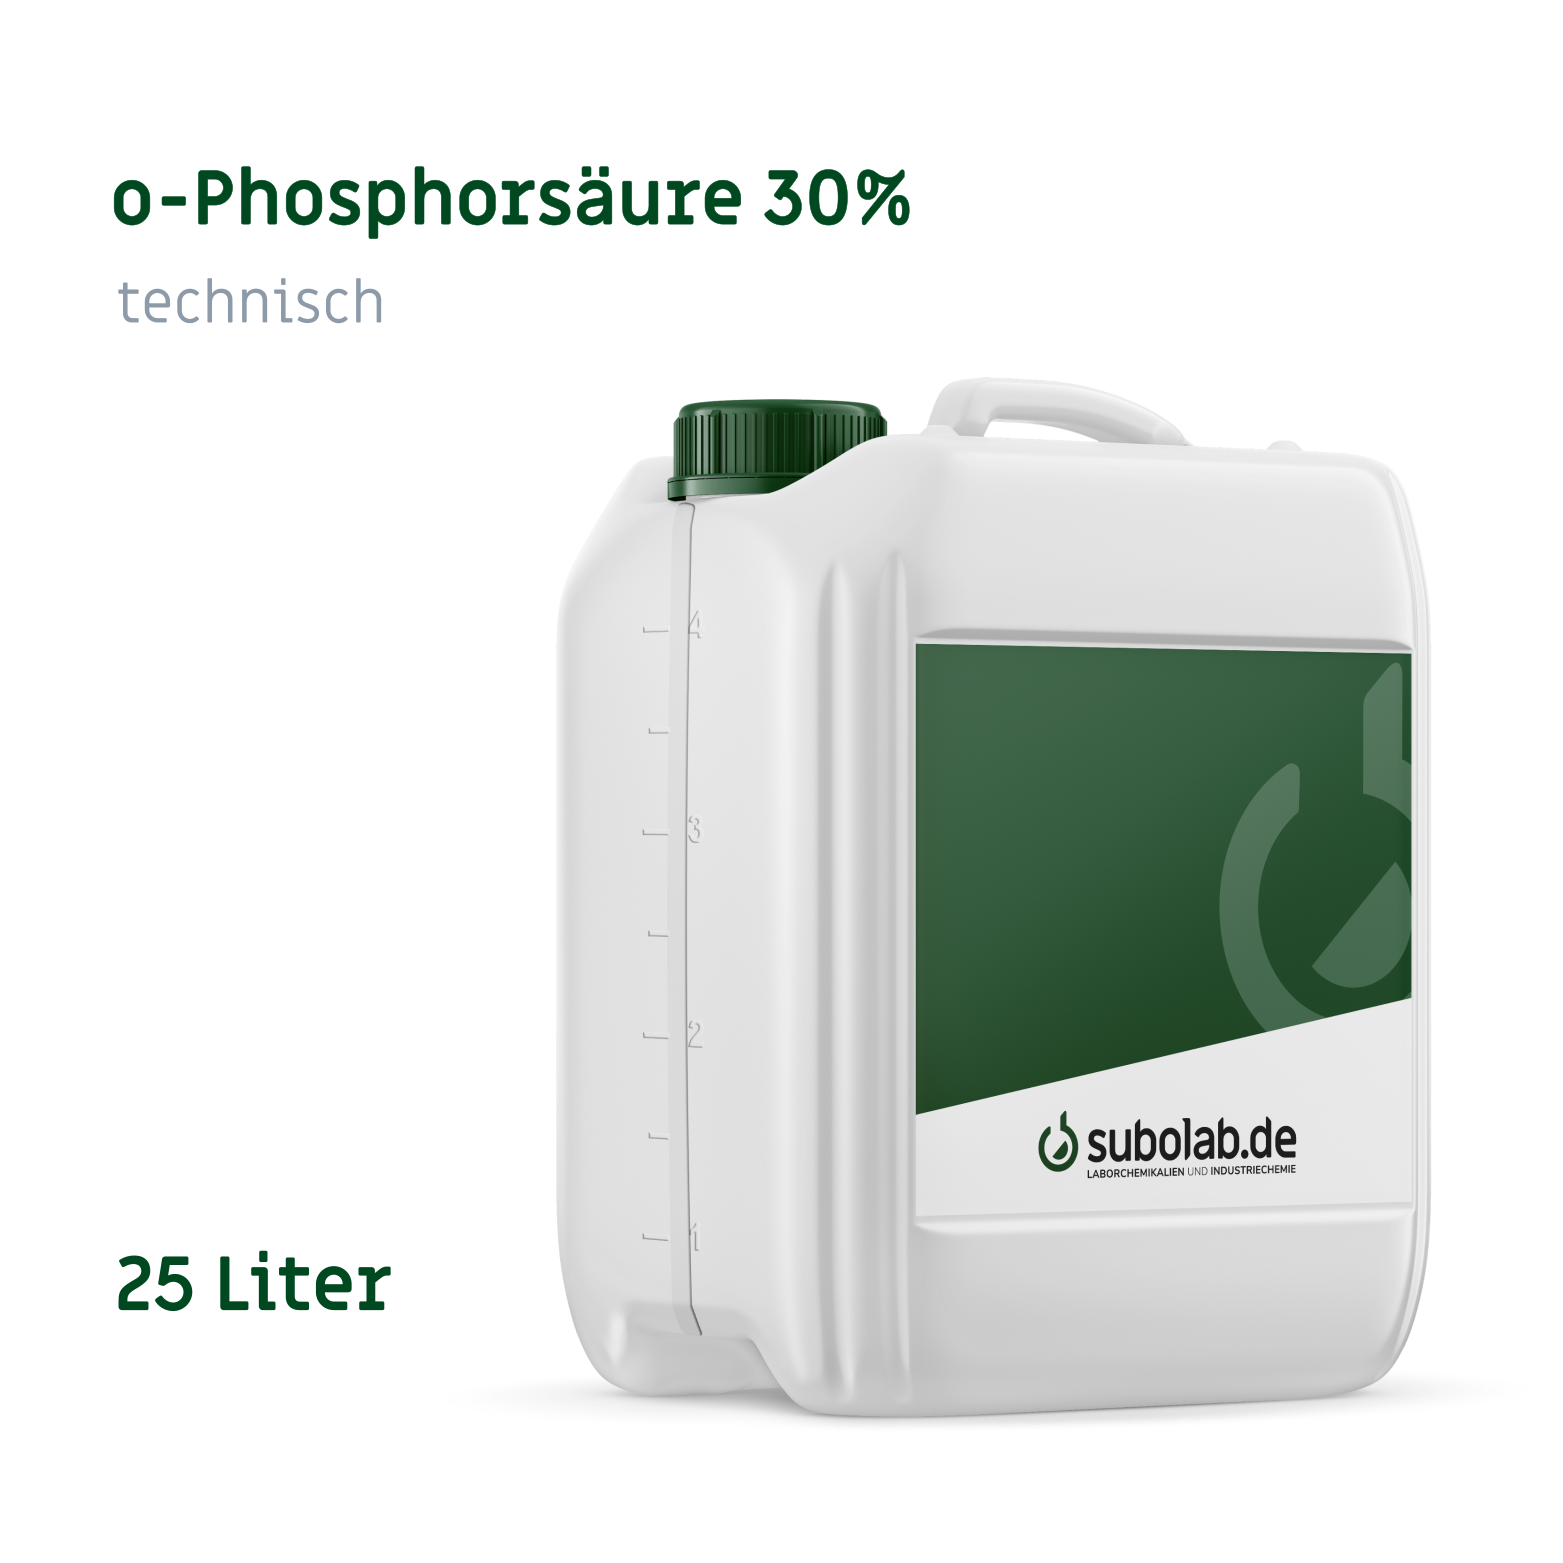 Bild von o-Phosphorsäure 30% technisch (25 Liter)